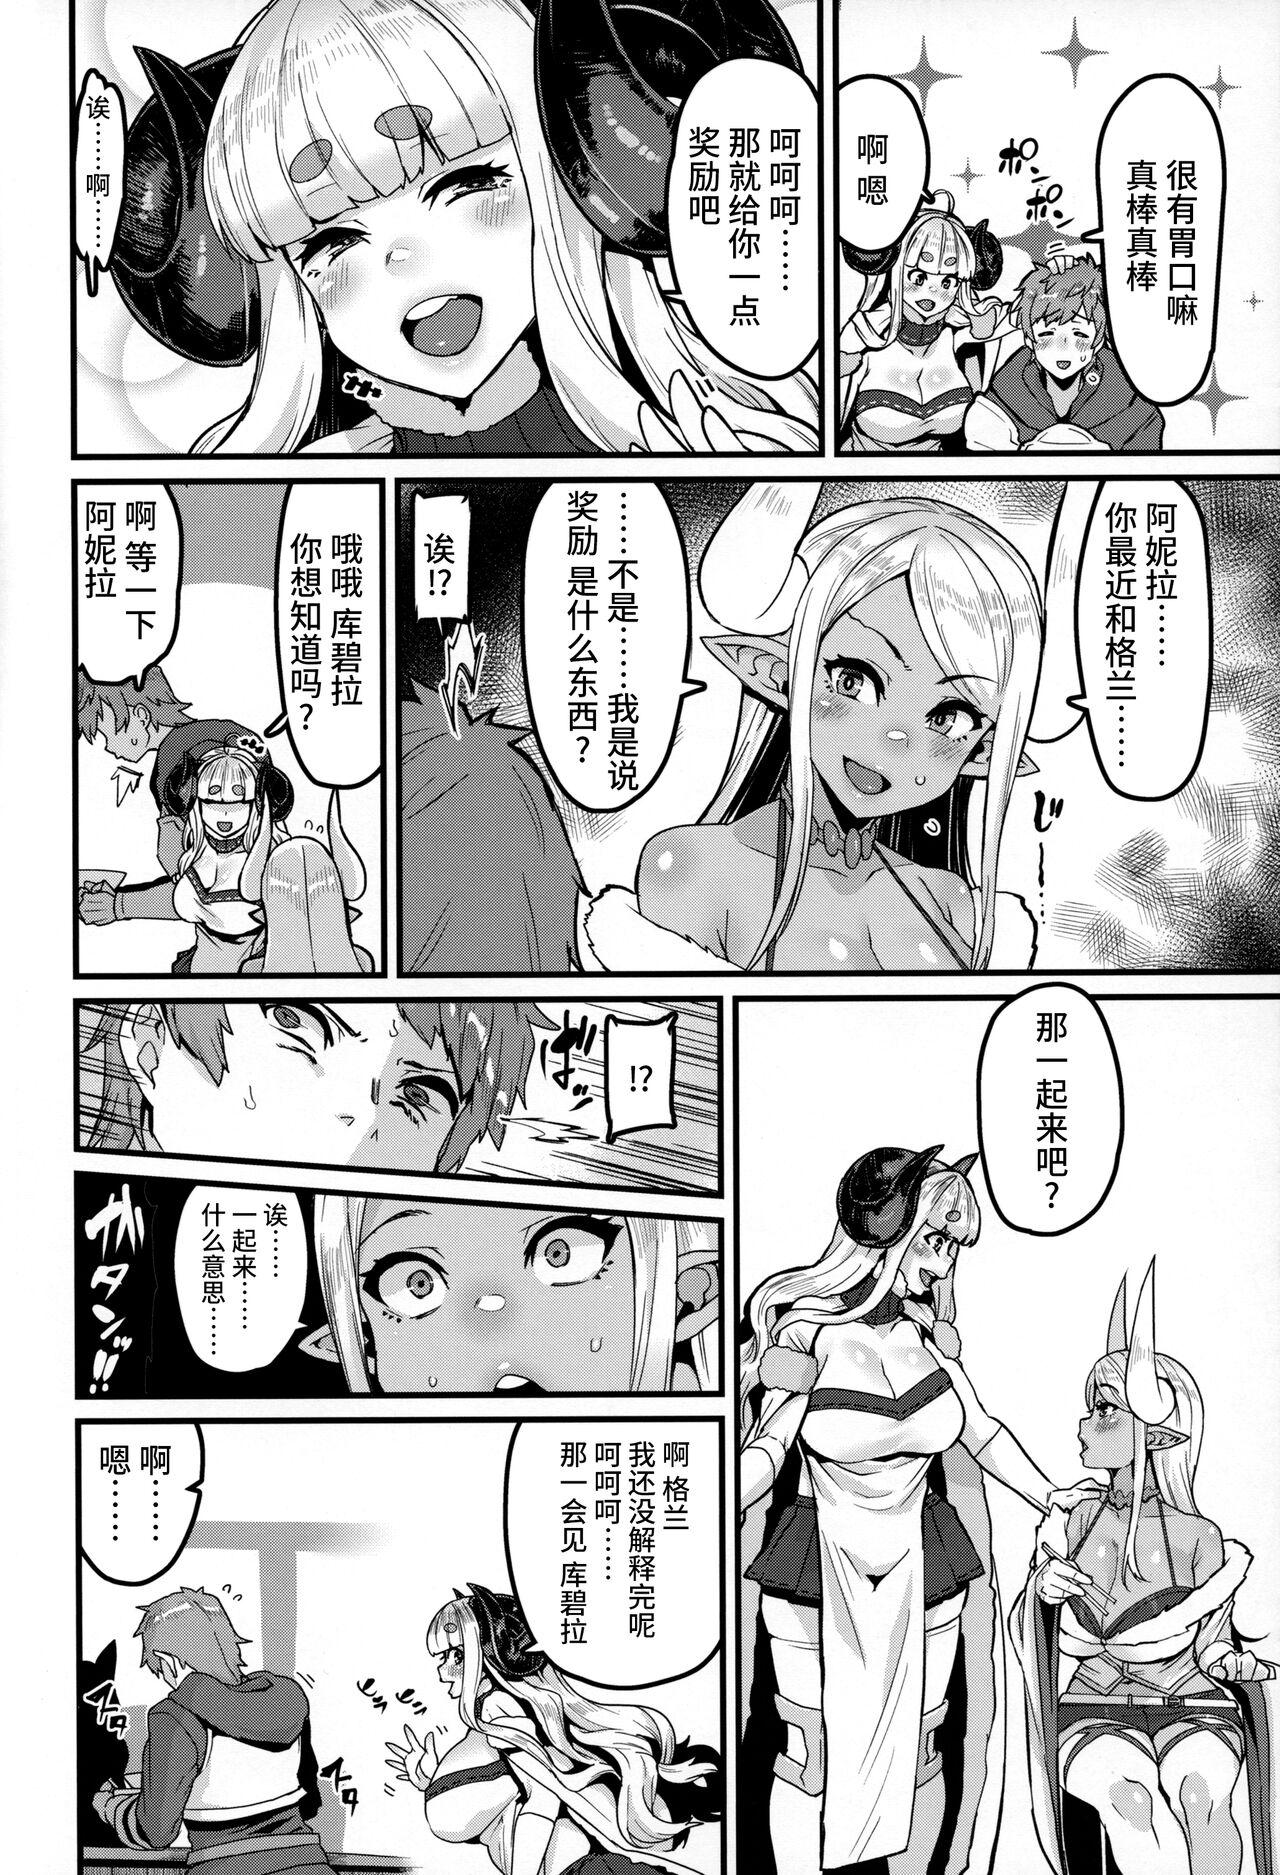 Gozada Ama Ama Shimashou ne - Granblue fantasy Flash - Page 6